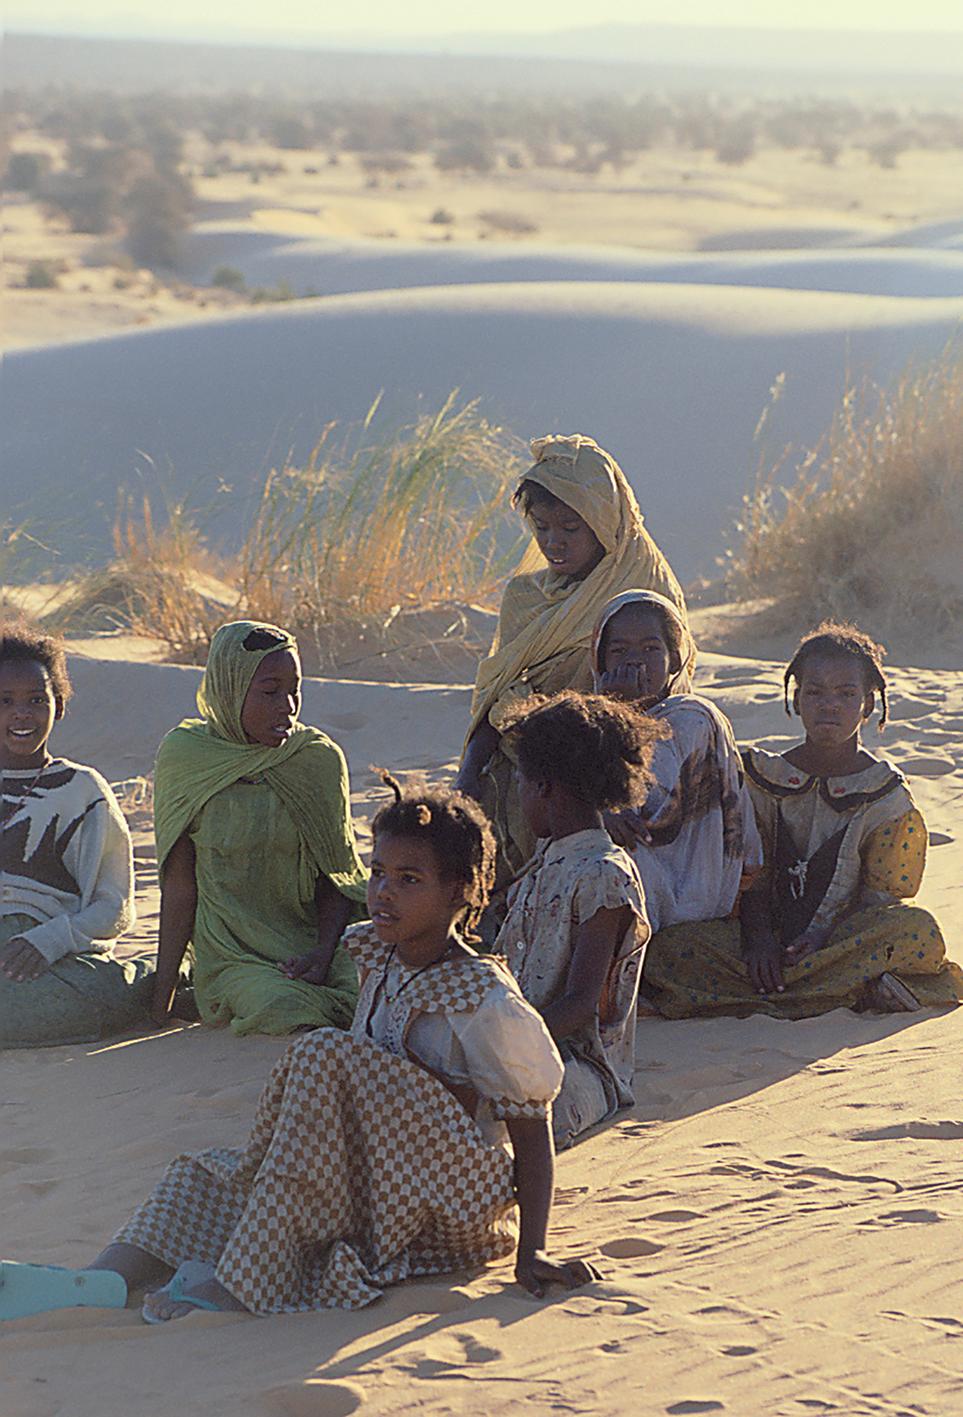 Bellec Portrait Photograph - Children from Mauritanian's desert